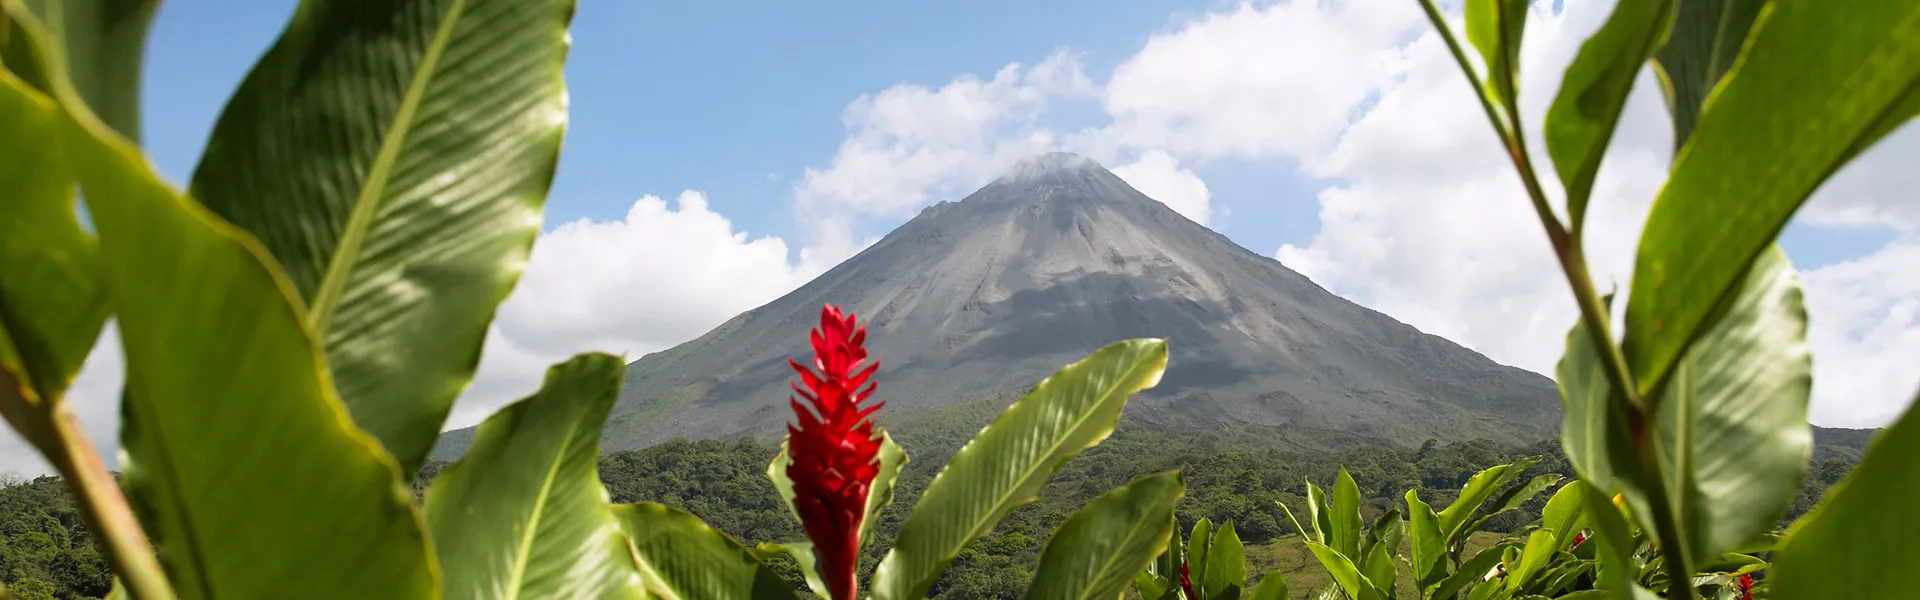 Costa Rica Arenal Volcano Scenic 78817458 GE Nov22 2600X1300